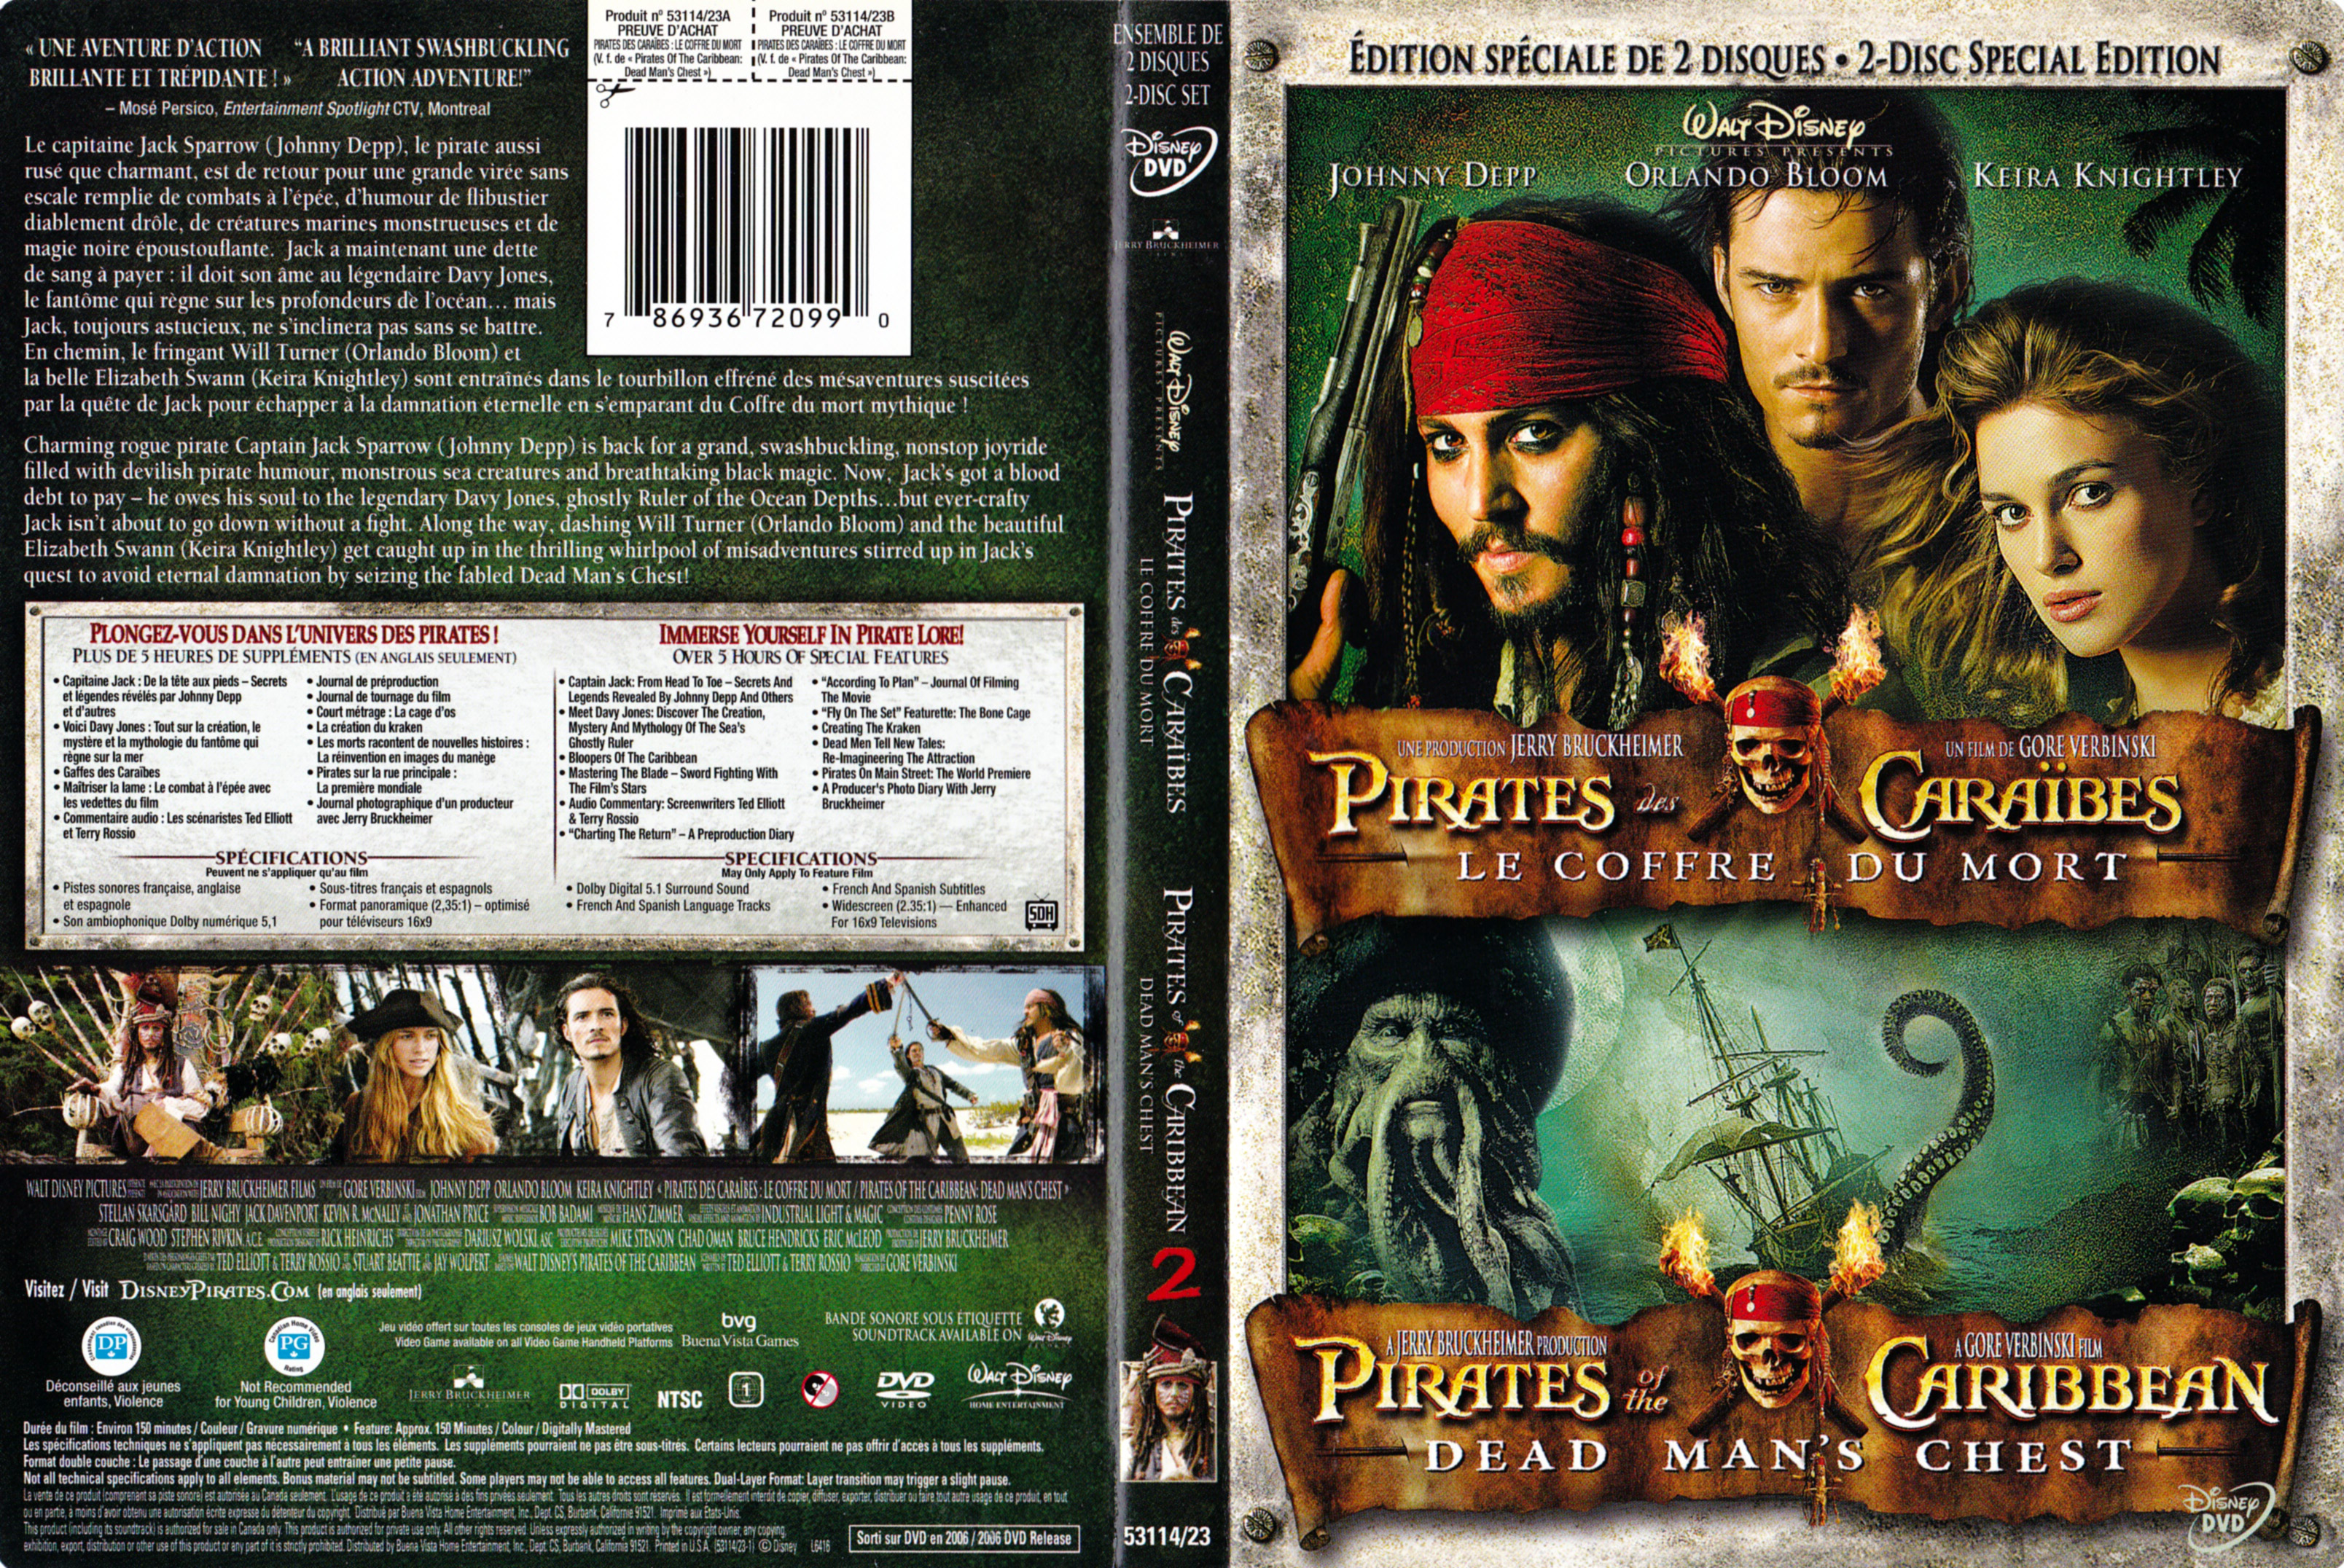 Jaquette DVD Pirates des caraibes Le coffre du mort (Canadienne)